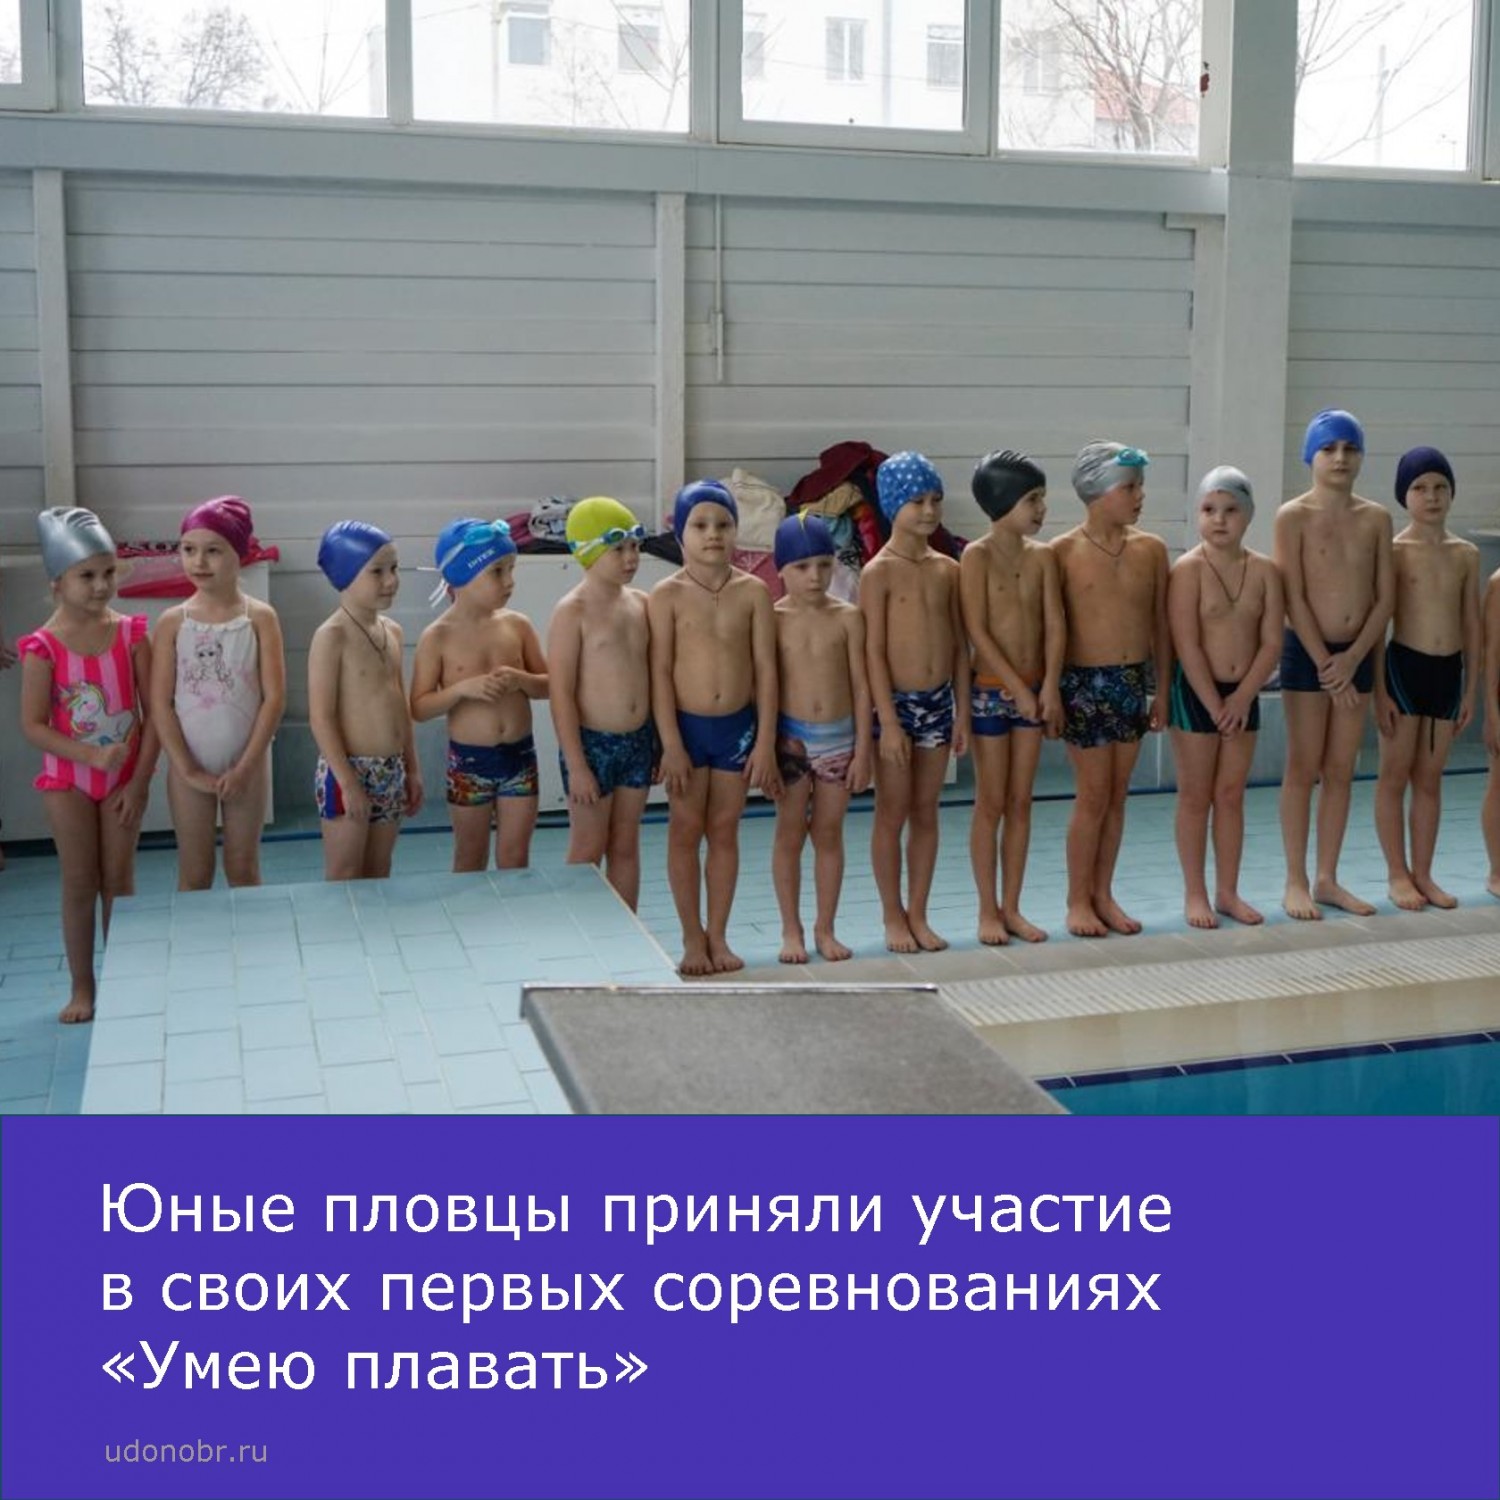 Юные пловцы приняли участие в своих первых соревнованиях «Умею плавать»